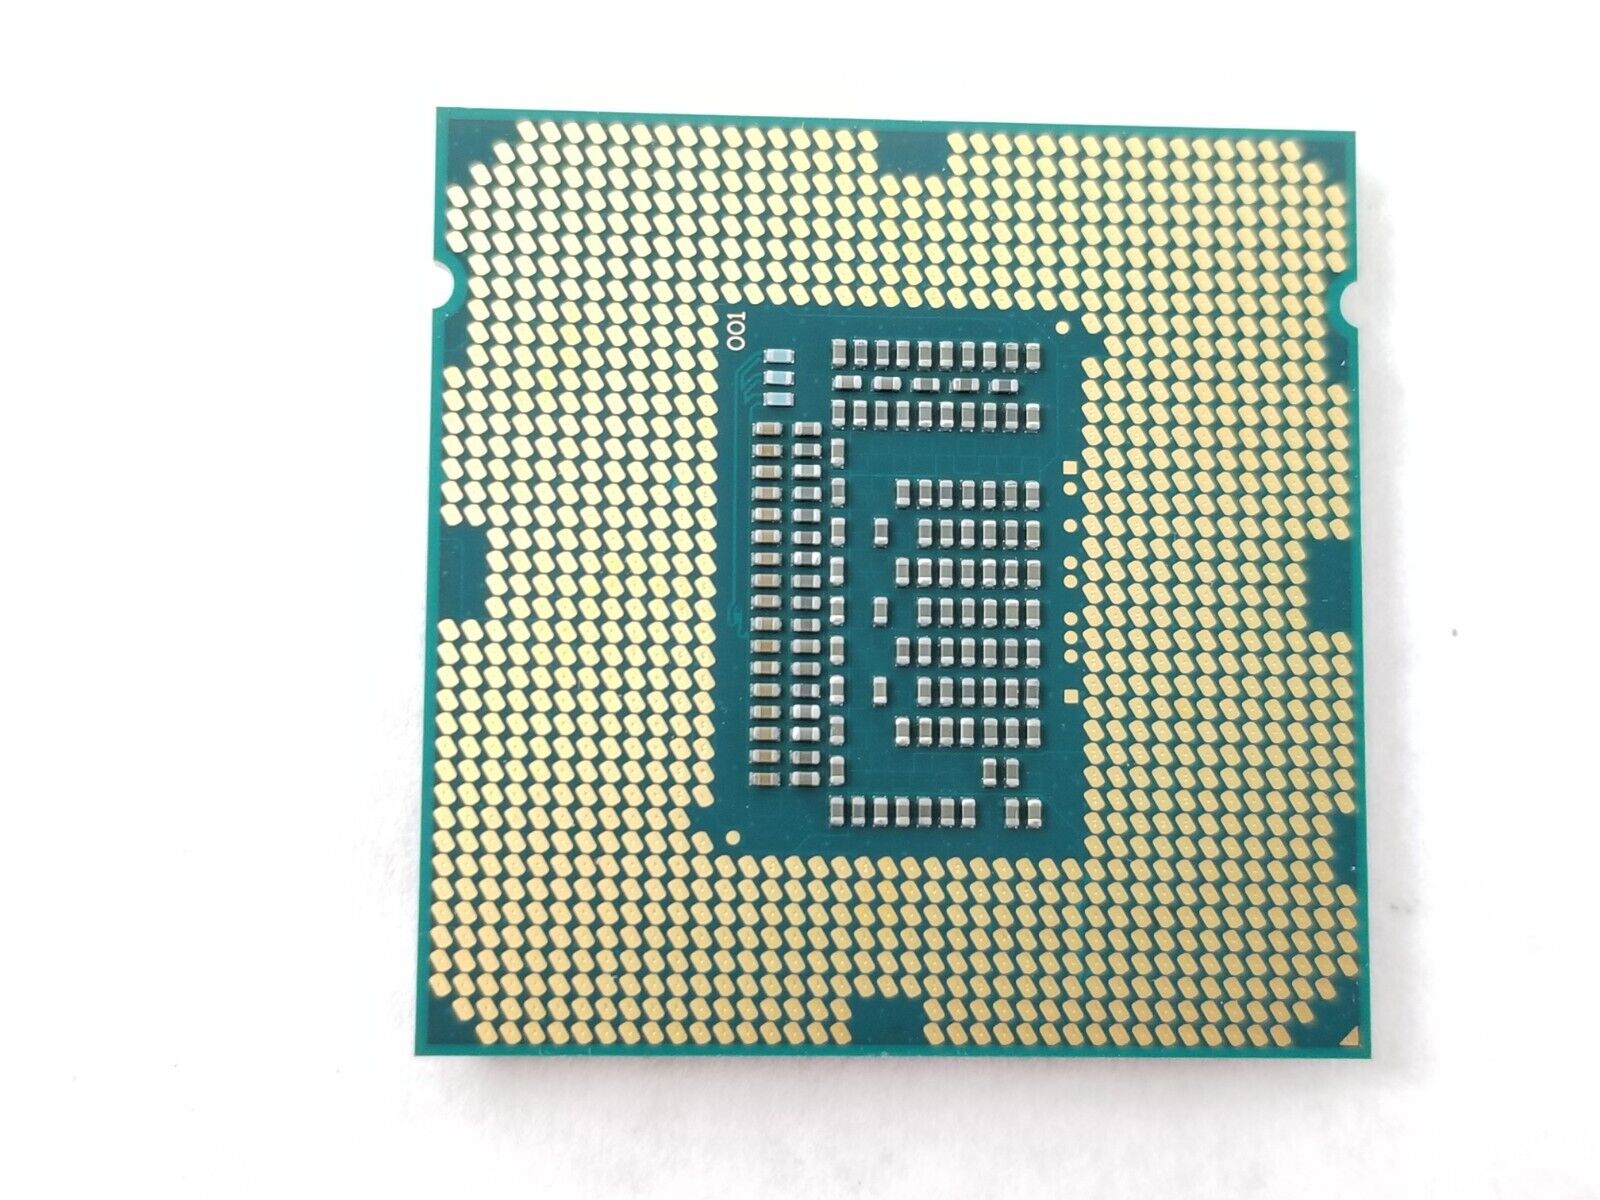 Intel Core i5-3475S SR0PP 2.90GHz Quad Core 6MB LGA1155 Processor CPU